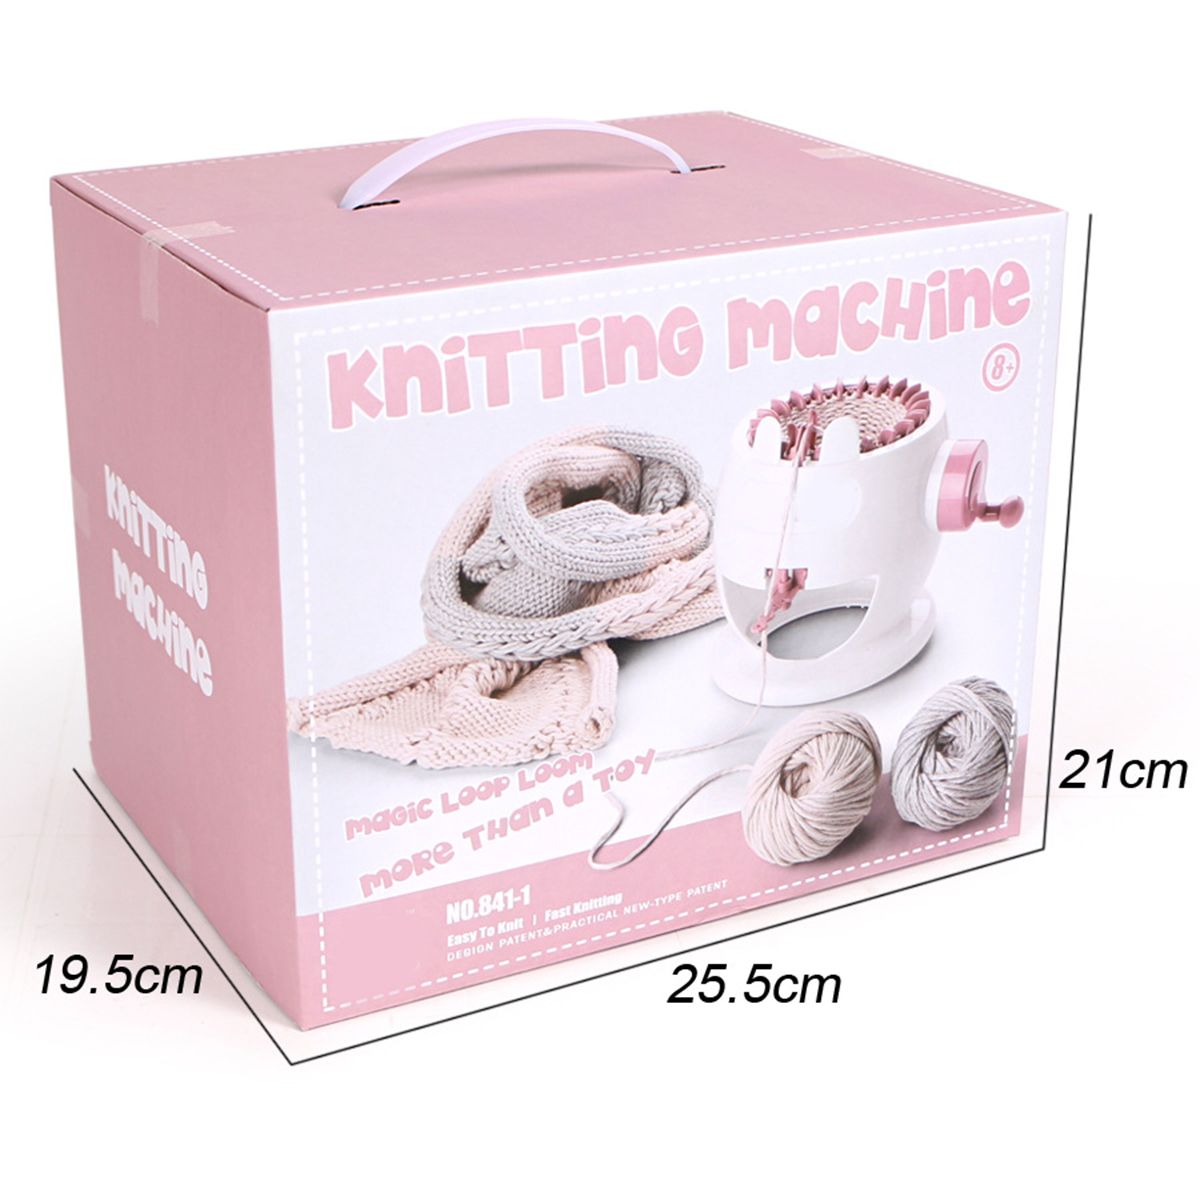 Kids-Knitting-Machine-Mini-Children-Weaving-Loom-Knit-For-Hats-Scarves-Socks-Toys-1513412